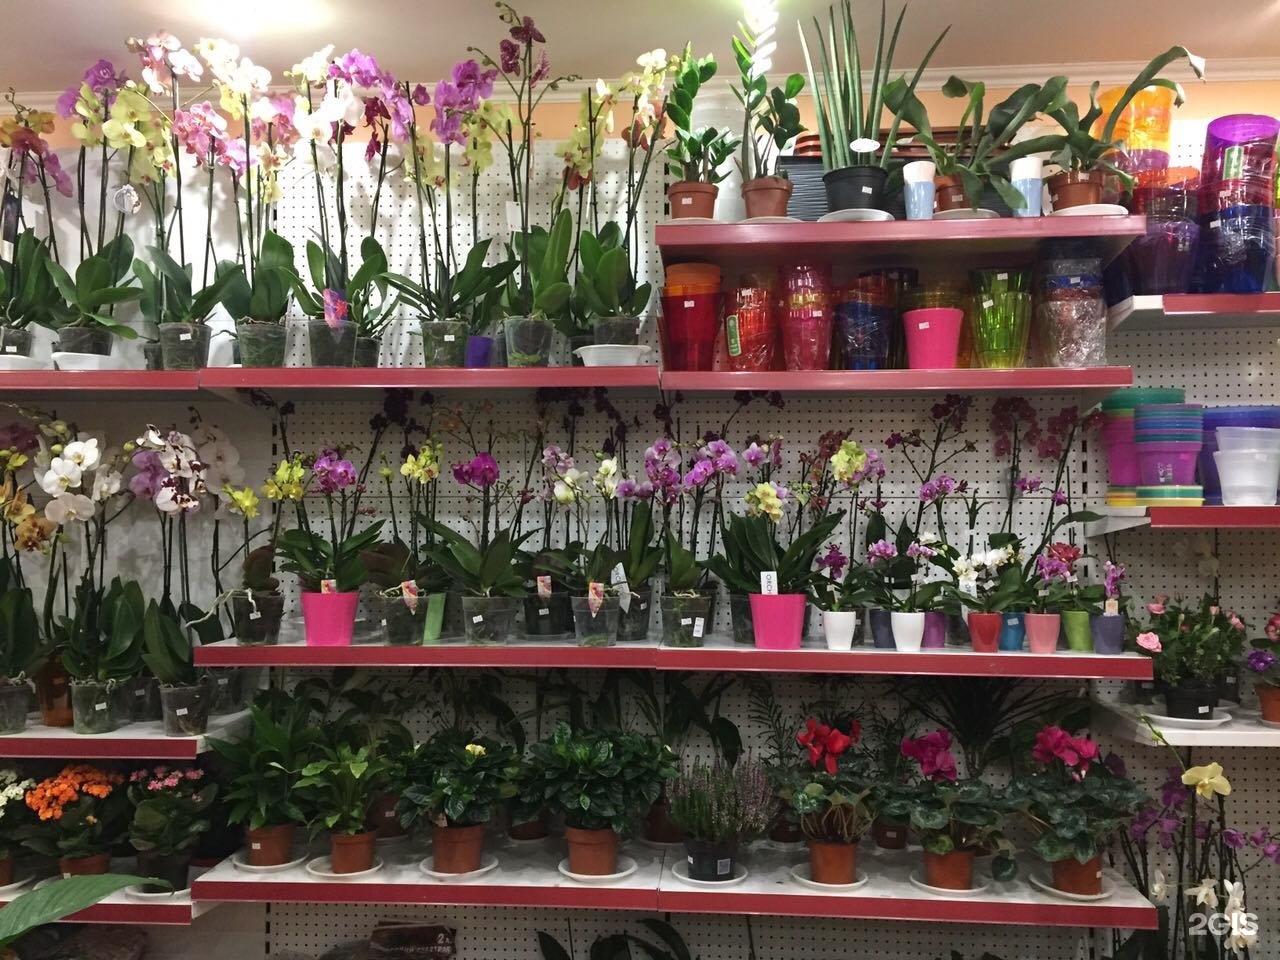 Садовый центр самара каталог товаров. Стеллаж для комнатных цветов. Цветочный магазин комнатных растений. Стеллаж для орхидей. Цветы на стеллаже.